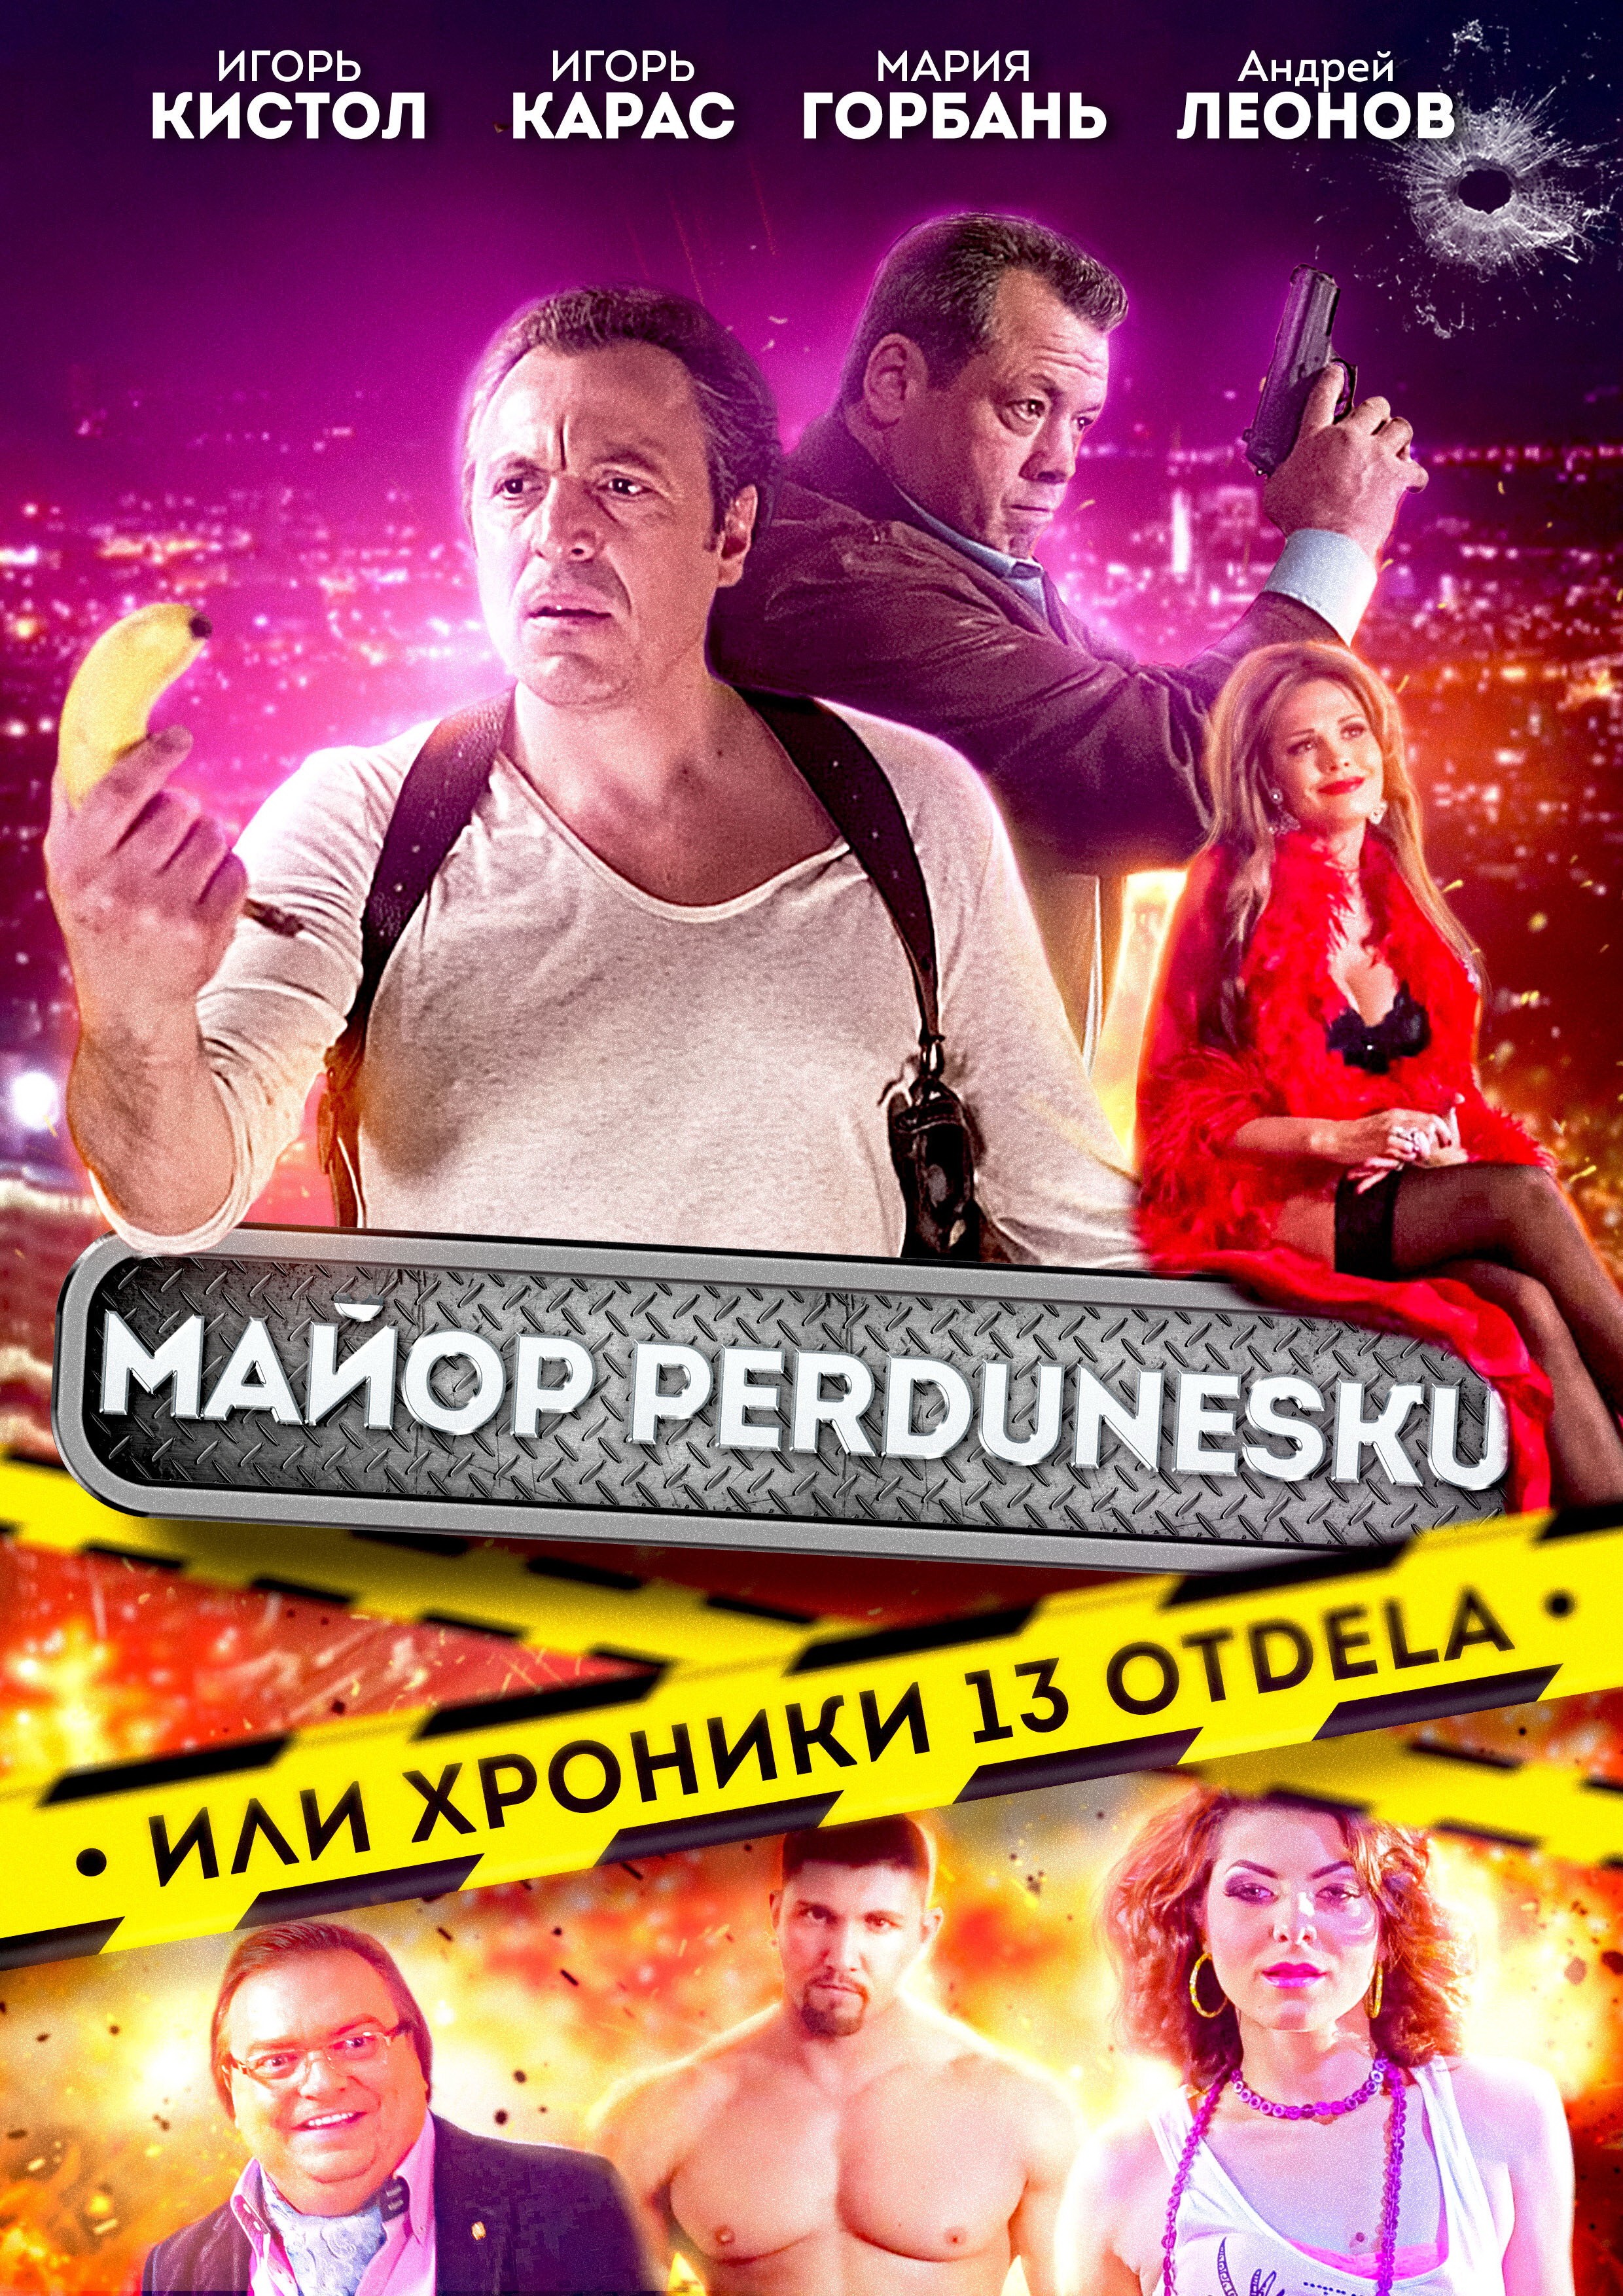 Майор Пердунеску, или хроники 13-го отдела: постер N206915